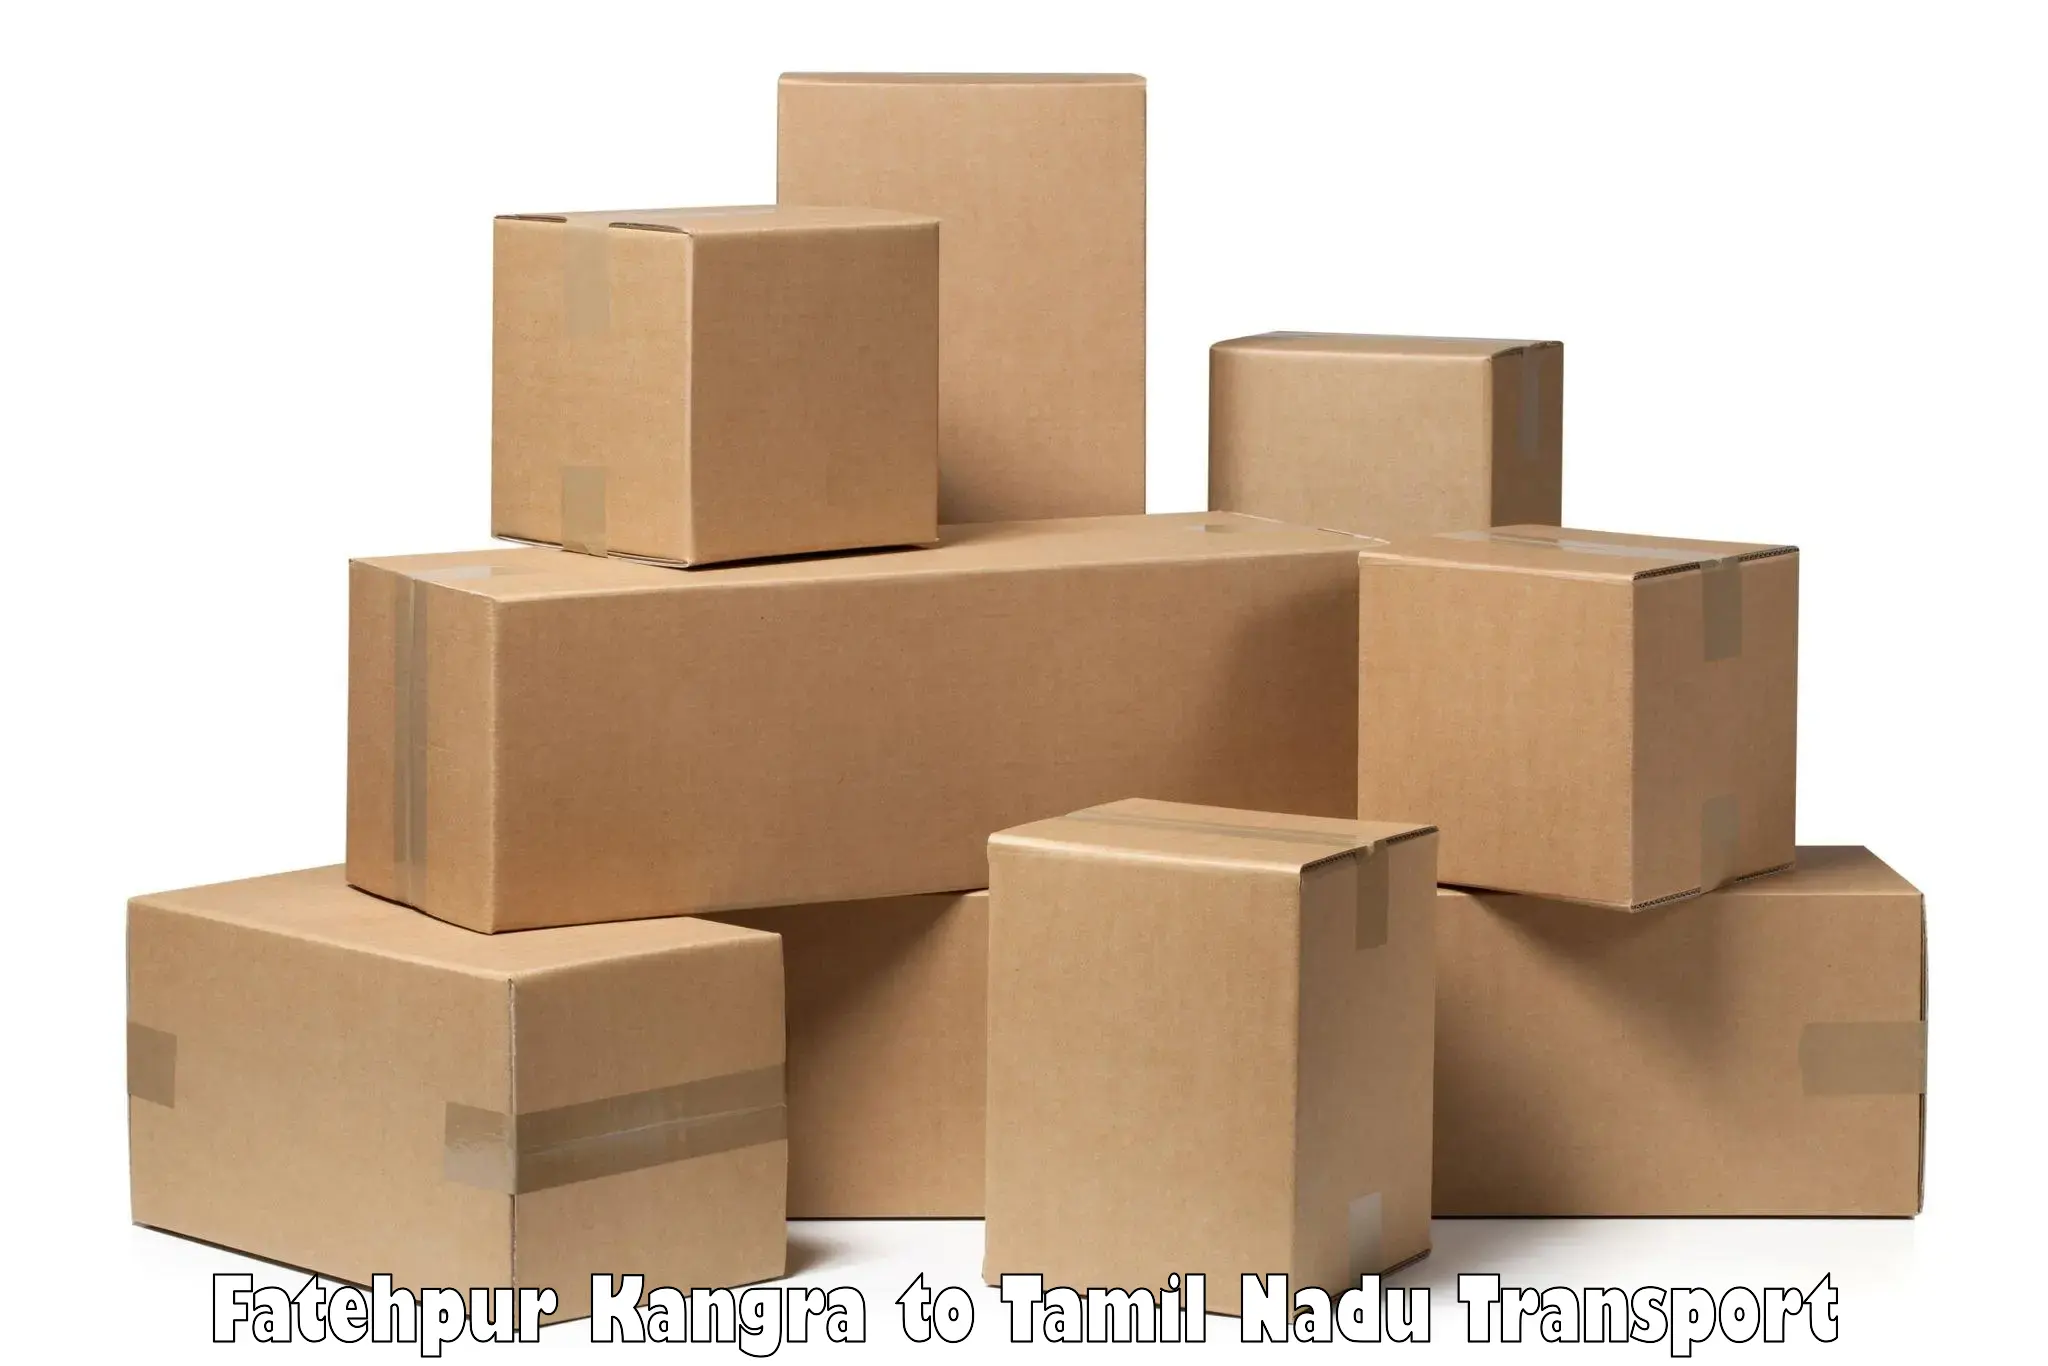 Shipping partner Fatehpur Kangra to Kanyakumari